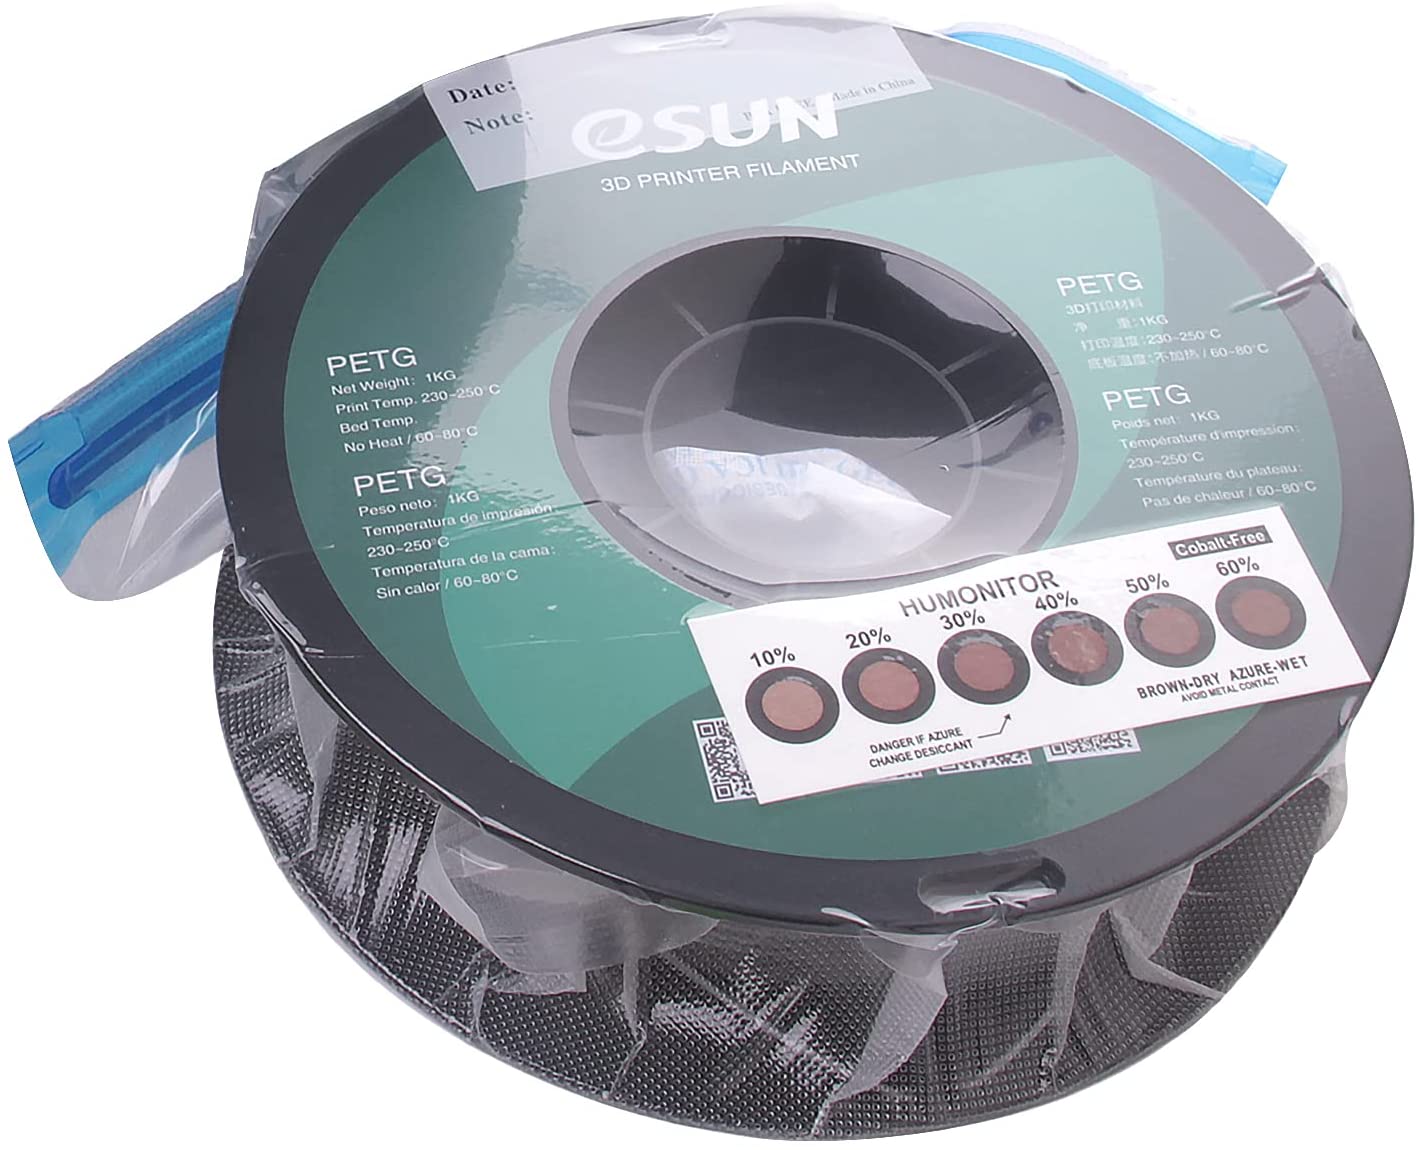 eSUN 3D Printing Filament Vacuum Storage Kit